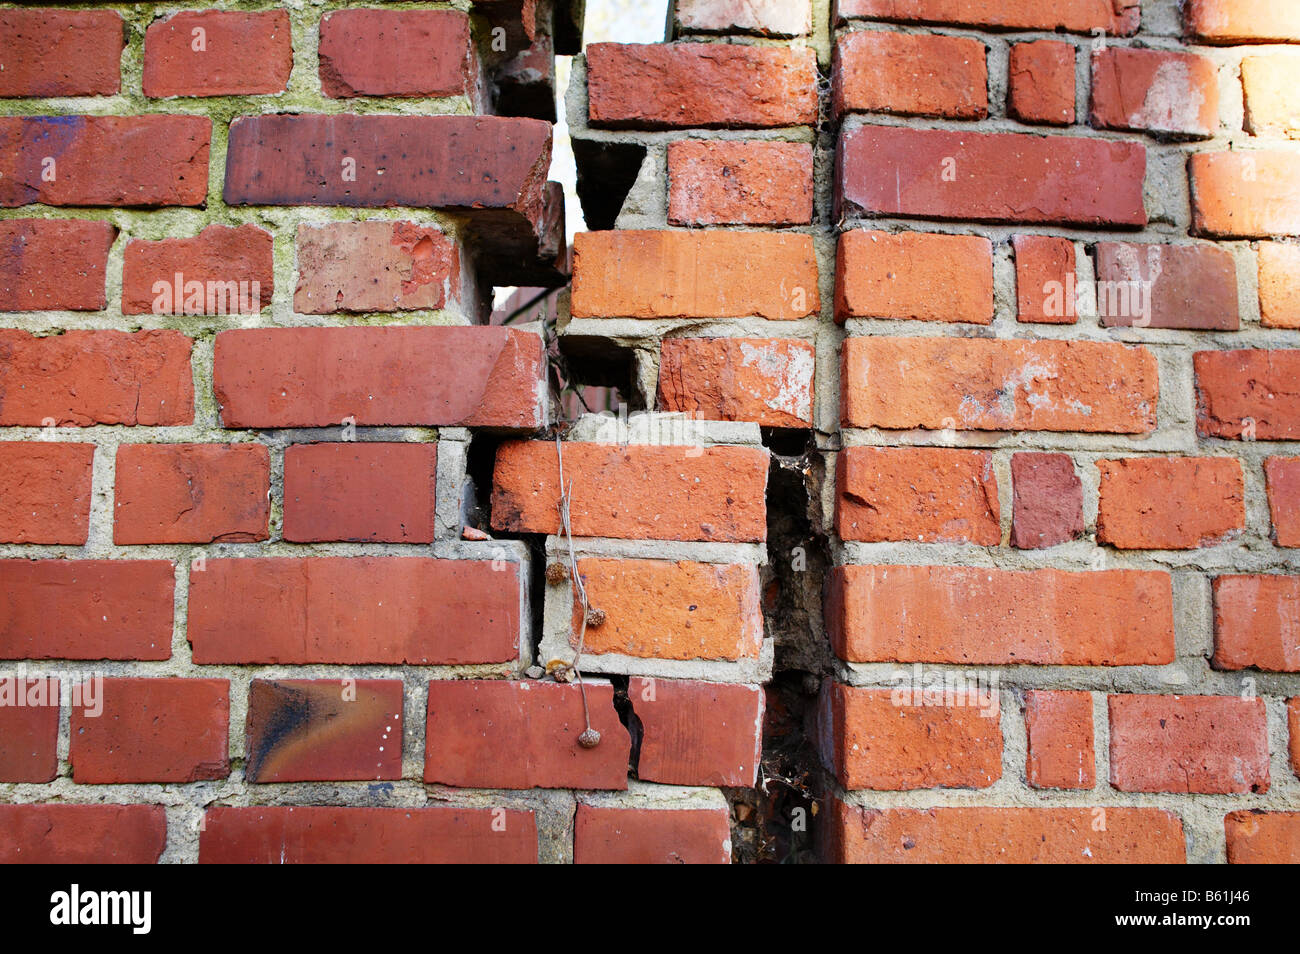 Broken bricks mortar wall subsidence maintenance old poor construction Stock Photo